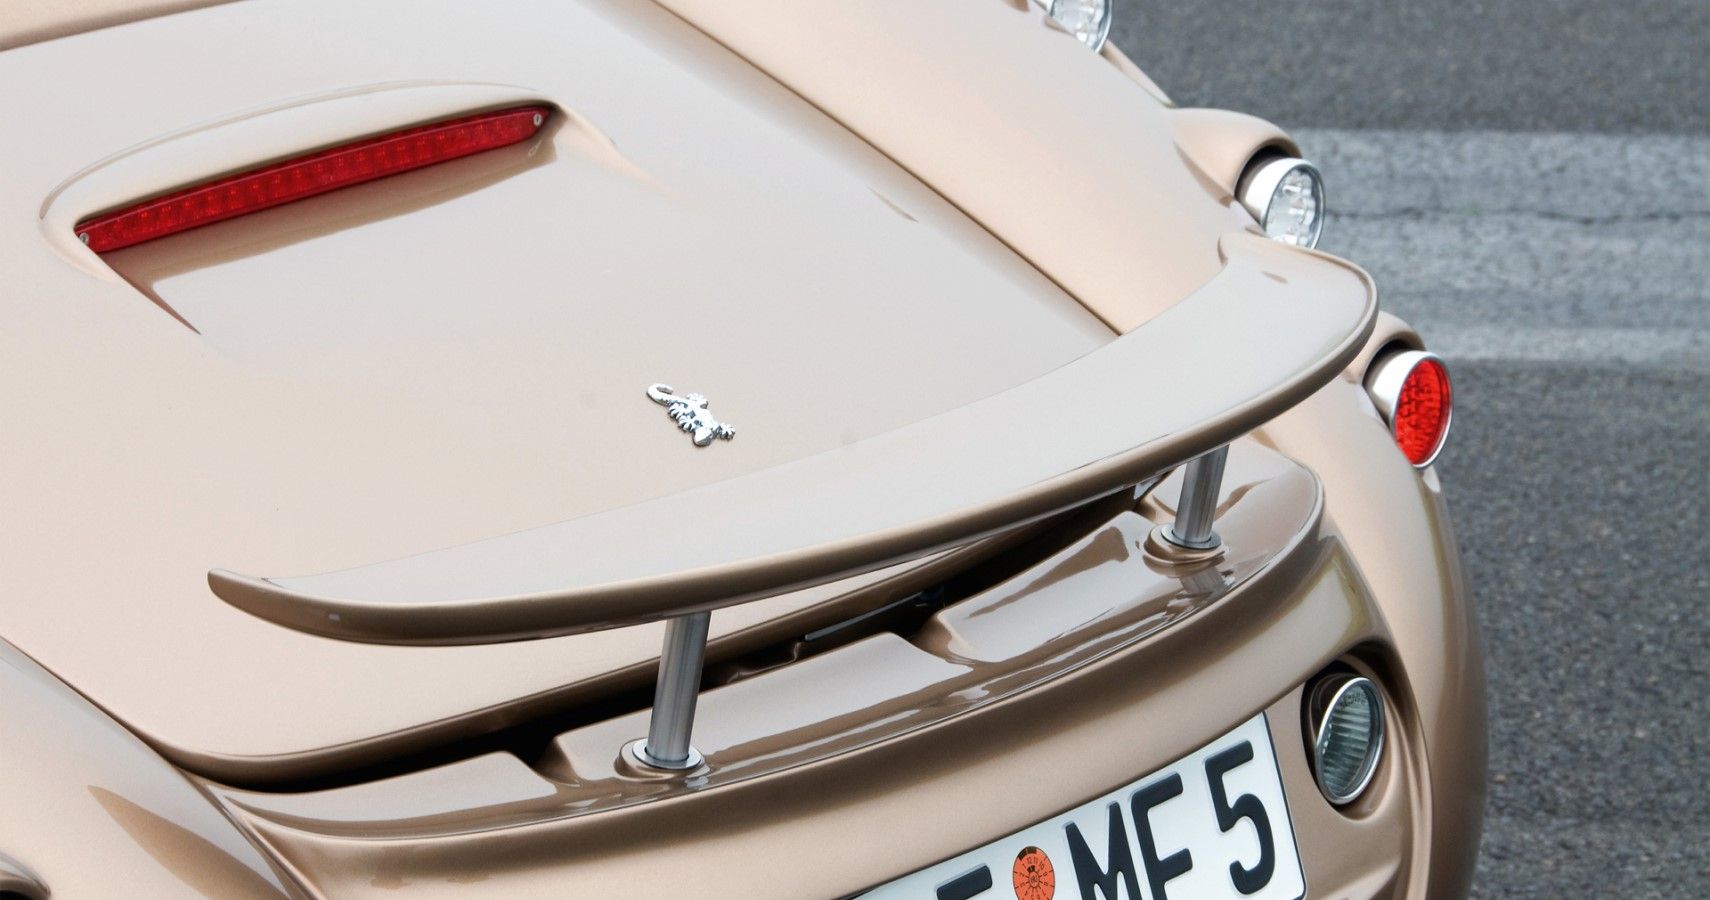 Wiesmann MF5 Roadster rear spolier close-up view